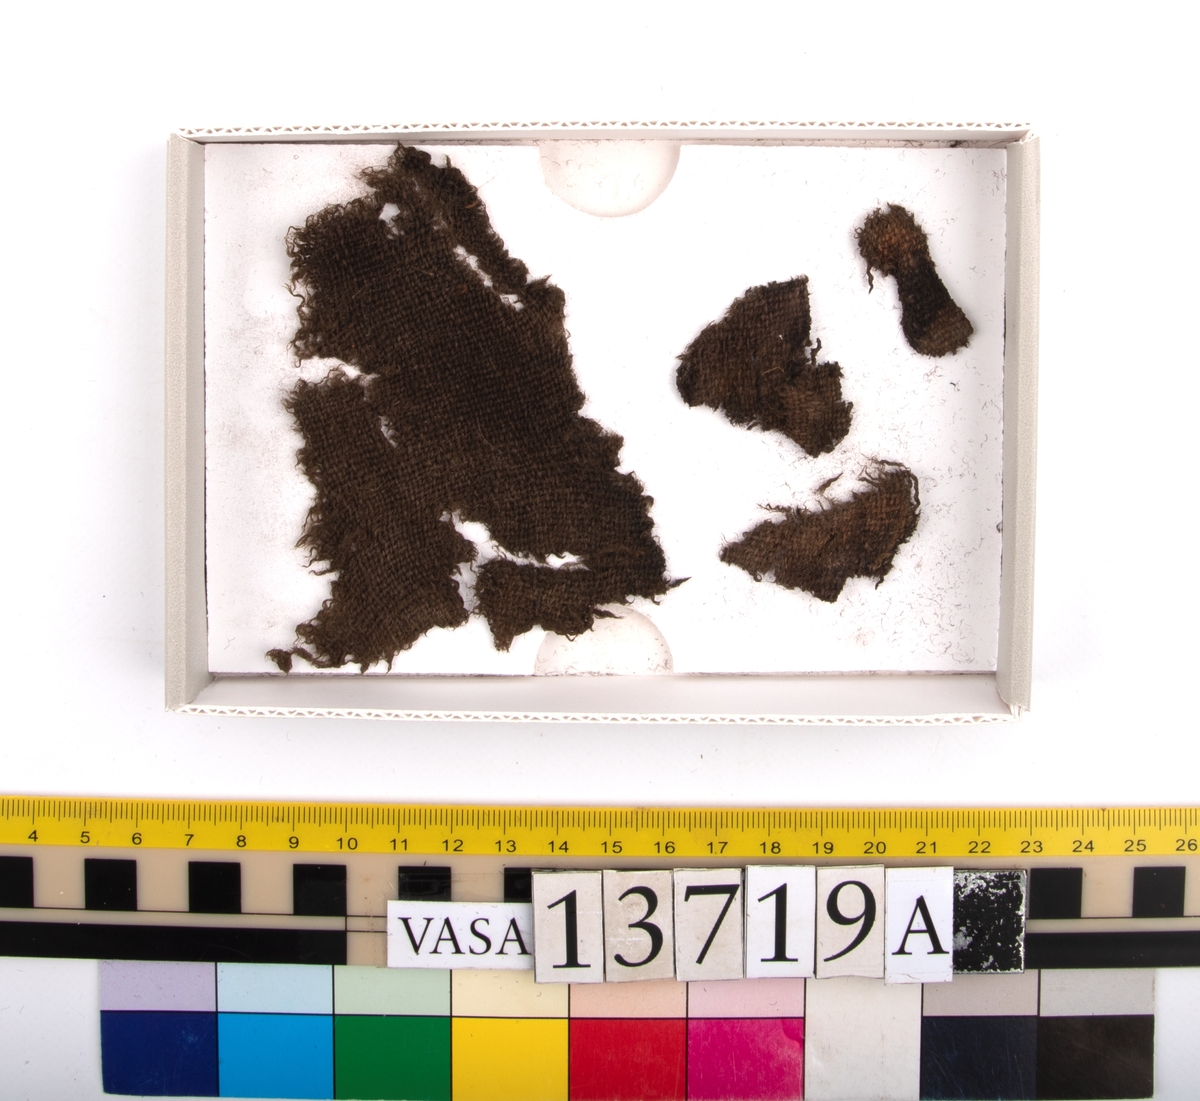 Textil.
33 textilfragment uppdelade på fyndnummer 13719a-c.
Fnr 13719a består av 5 fragment av ull vävda i tuskaft.
Fnr 13719b består av 14 fragment av ull vävda i tuskaft. Tyget har troligen varit valkat på ena sidan.
Fnr 13719c består av 14 fragment av ull vävda i tuskaft. Tyget har troligen varit valkat på ena sidan. De tre största fragmenten är kilformade. Fragmenten har flera originalkanter med spår av sömmar.